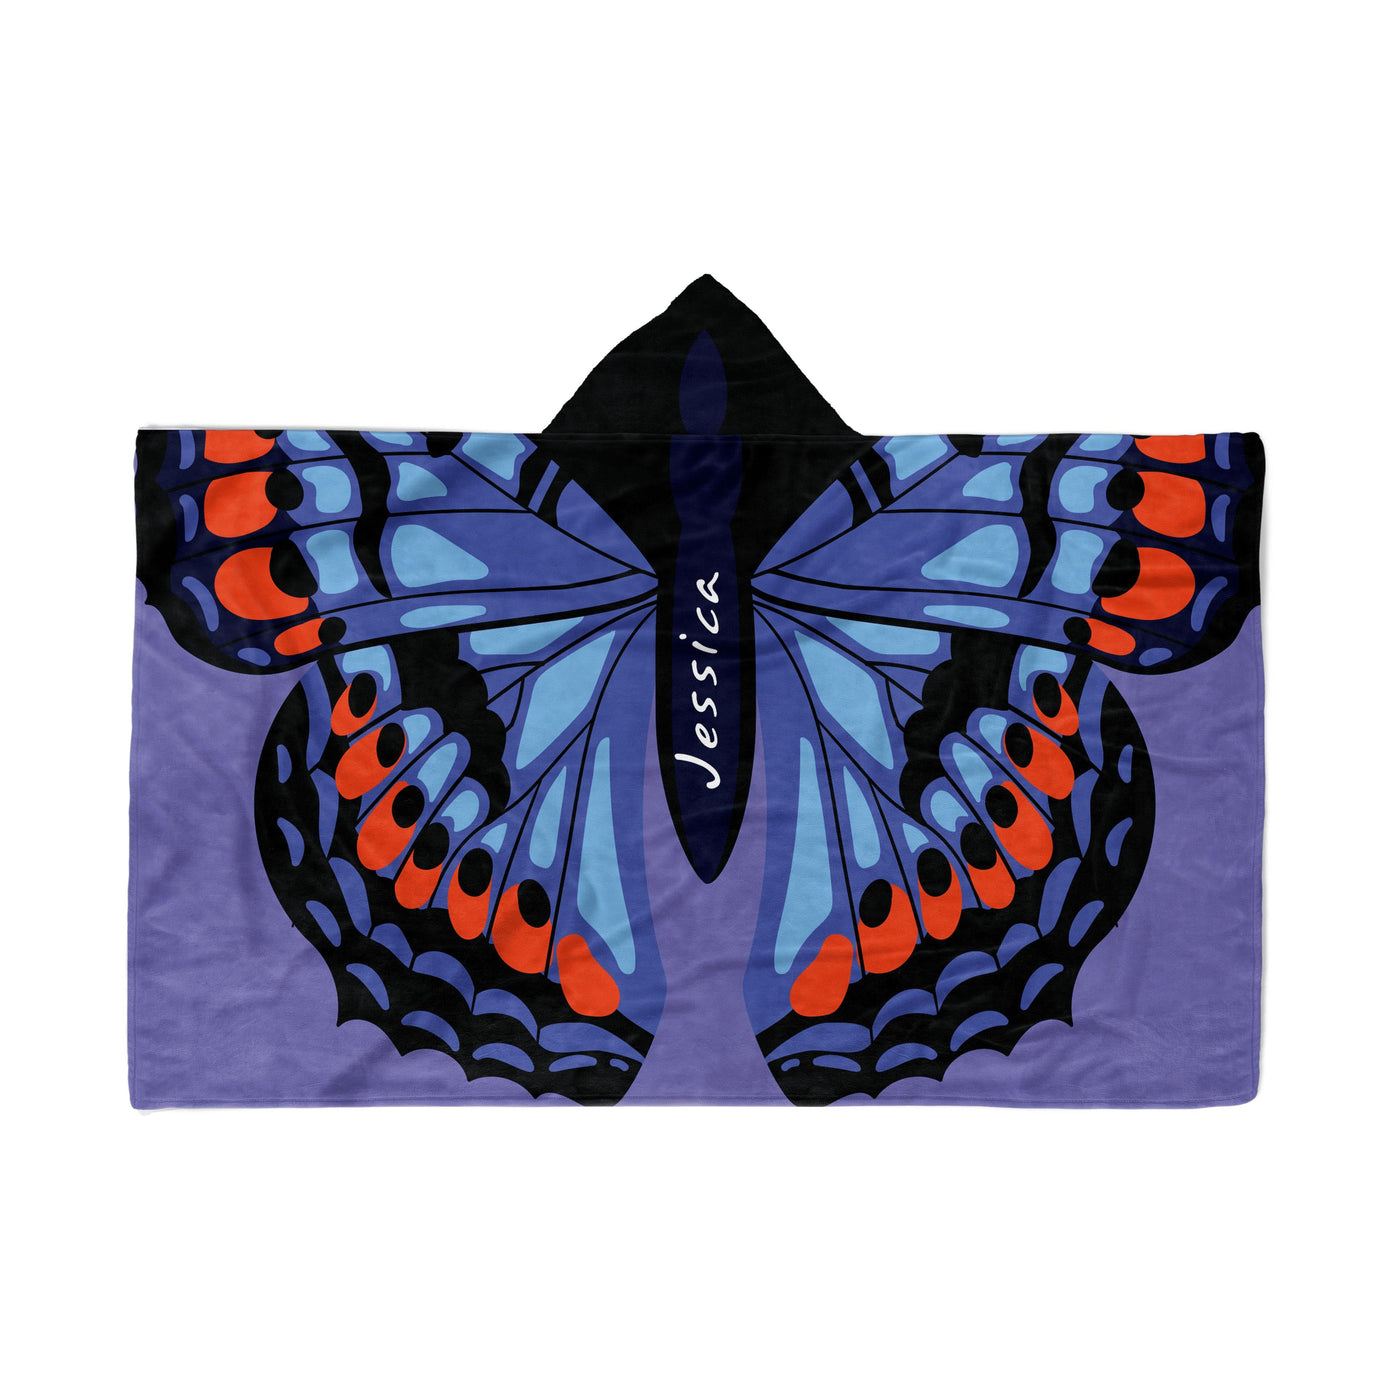 Hooded Fleece Blanket: Butterfly Wings Apparel & Accessories Sam + Zoey  Sam + Zoey